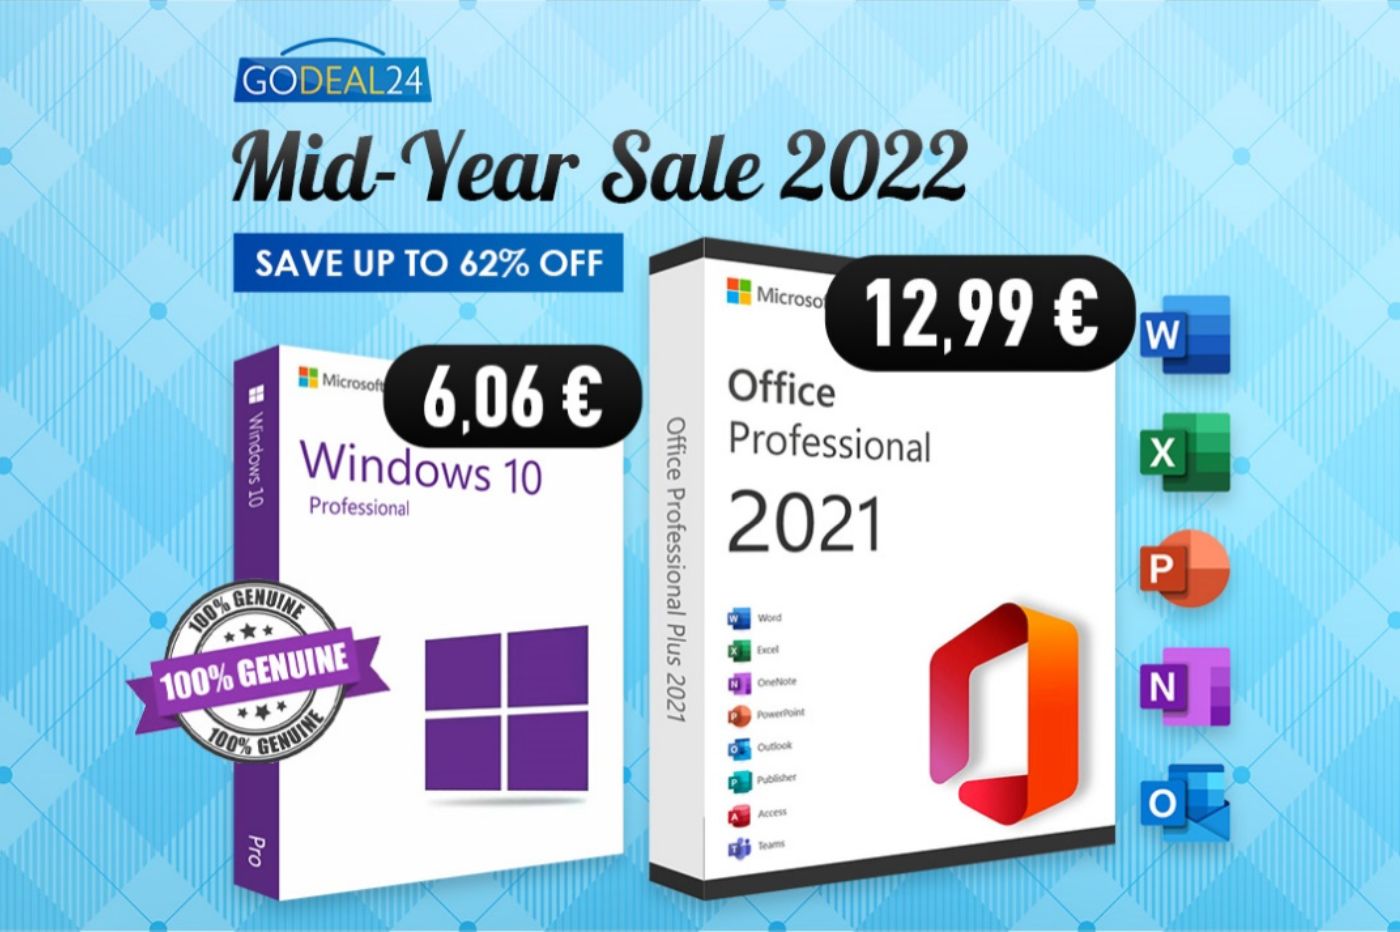 Pour fêter l'été, Godeal24 écrase les prix de ses licences (Windows 10, Office 2021)